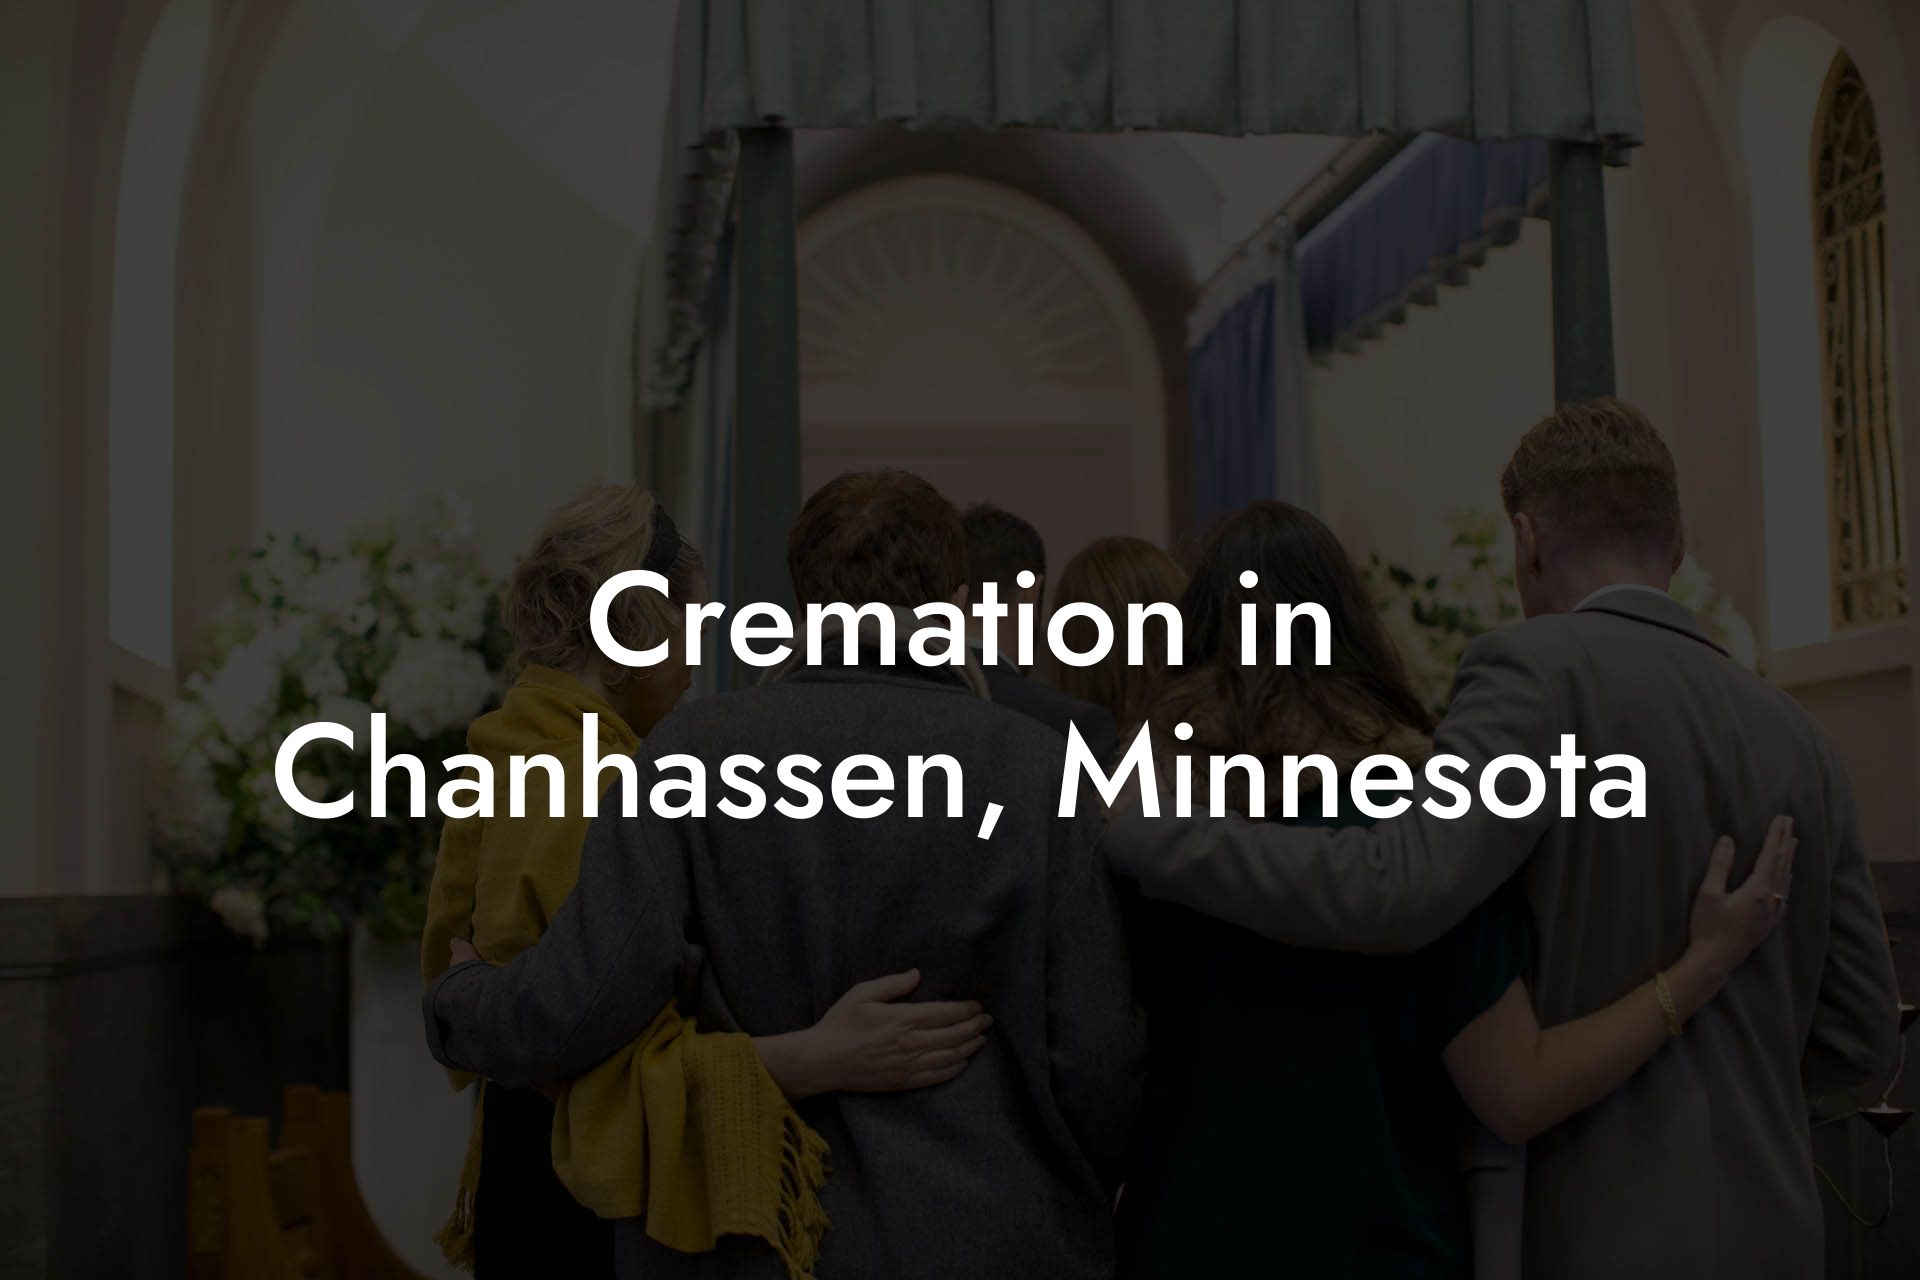 Cremation in Chanhassen, Minnesota